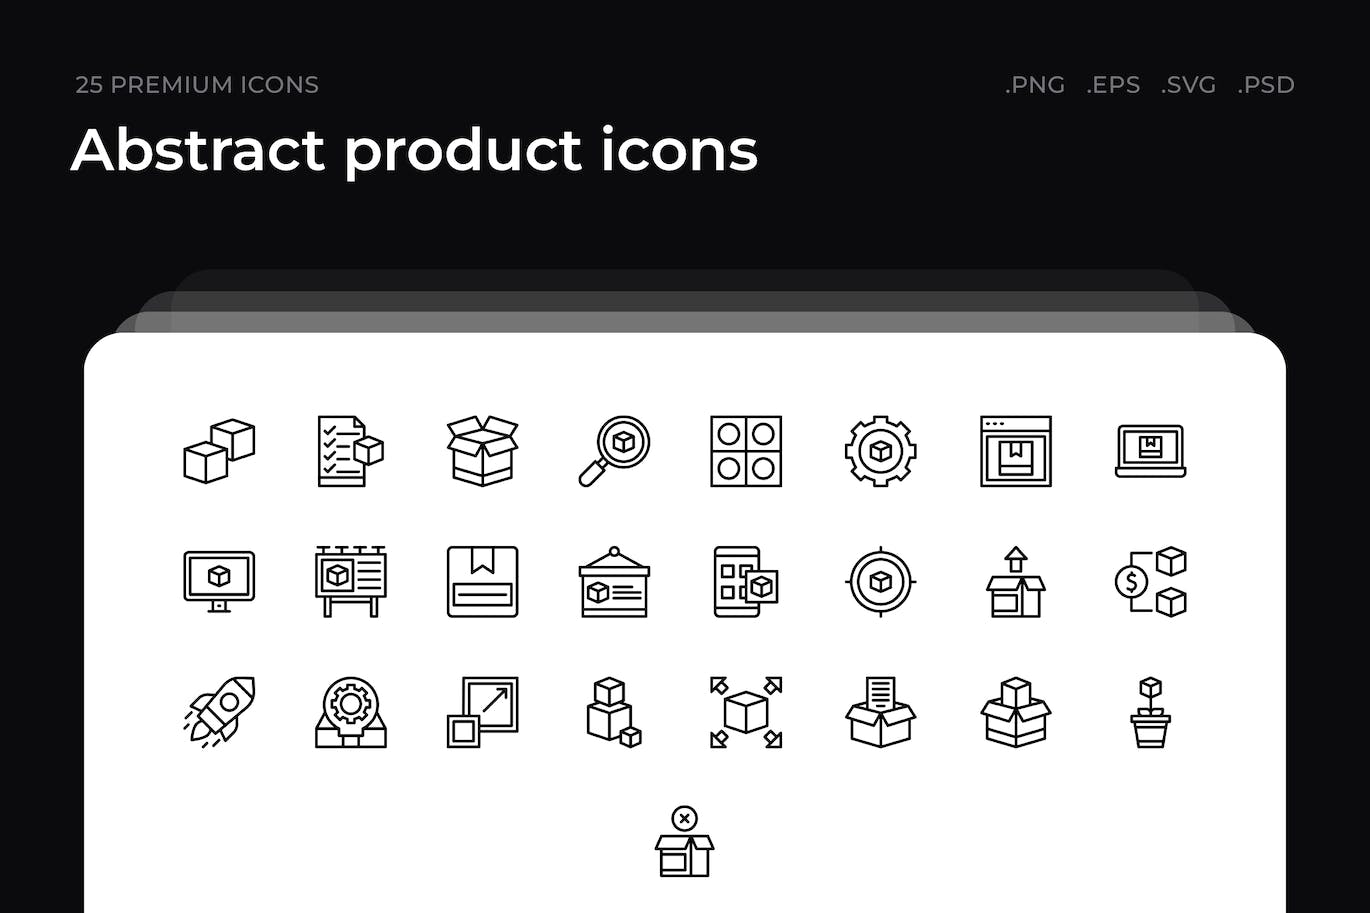 25枚抽象产品主题简约线条矢量图标 Abstract product icons 图标素材 第1张